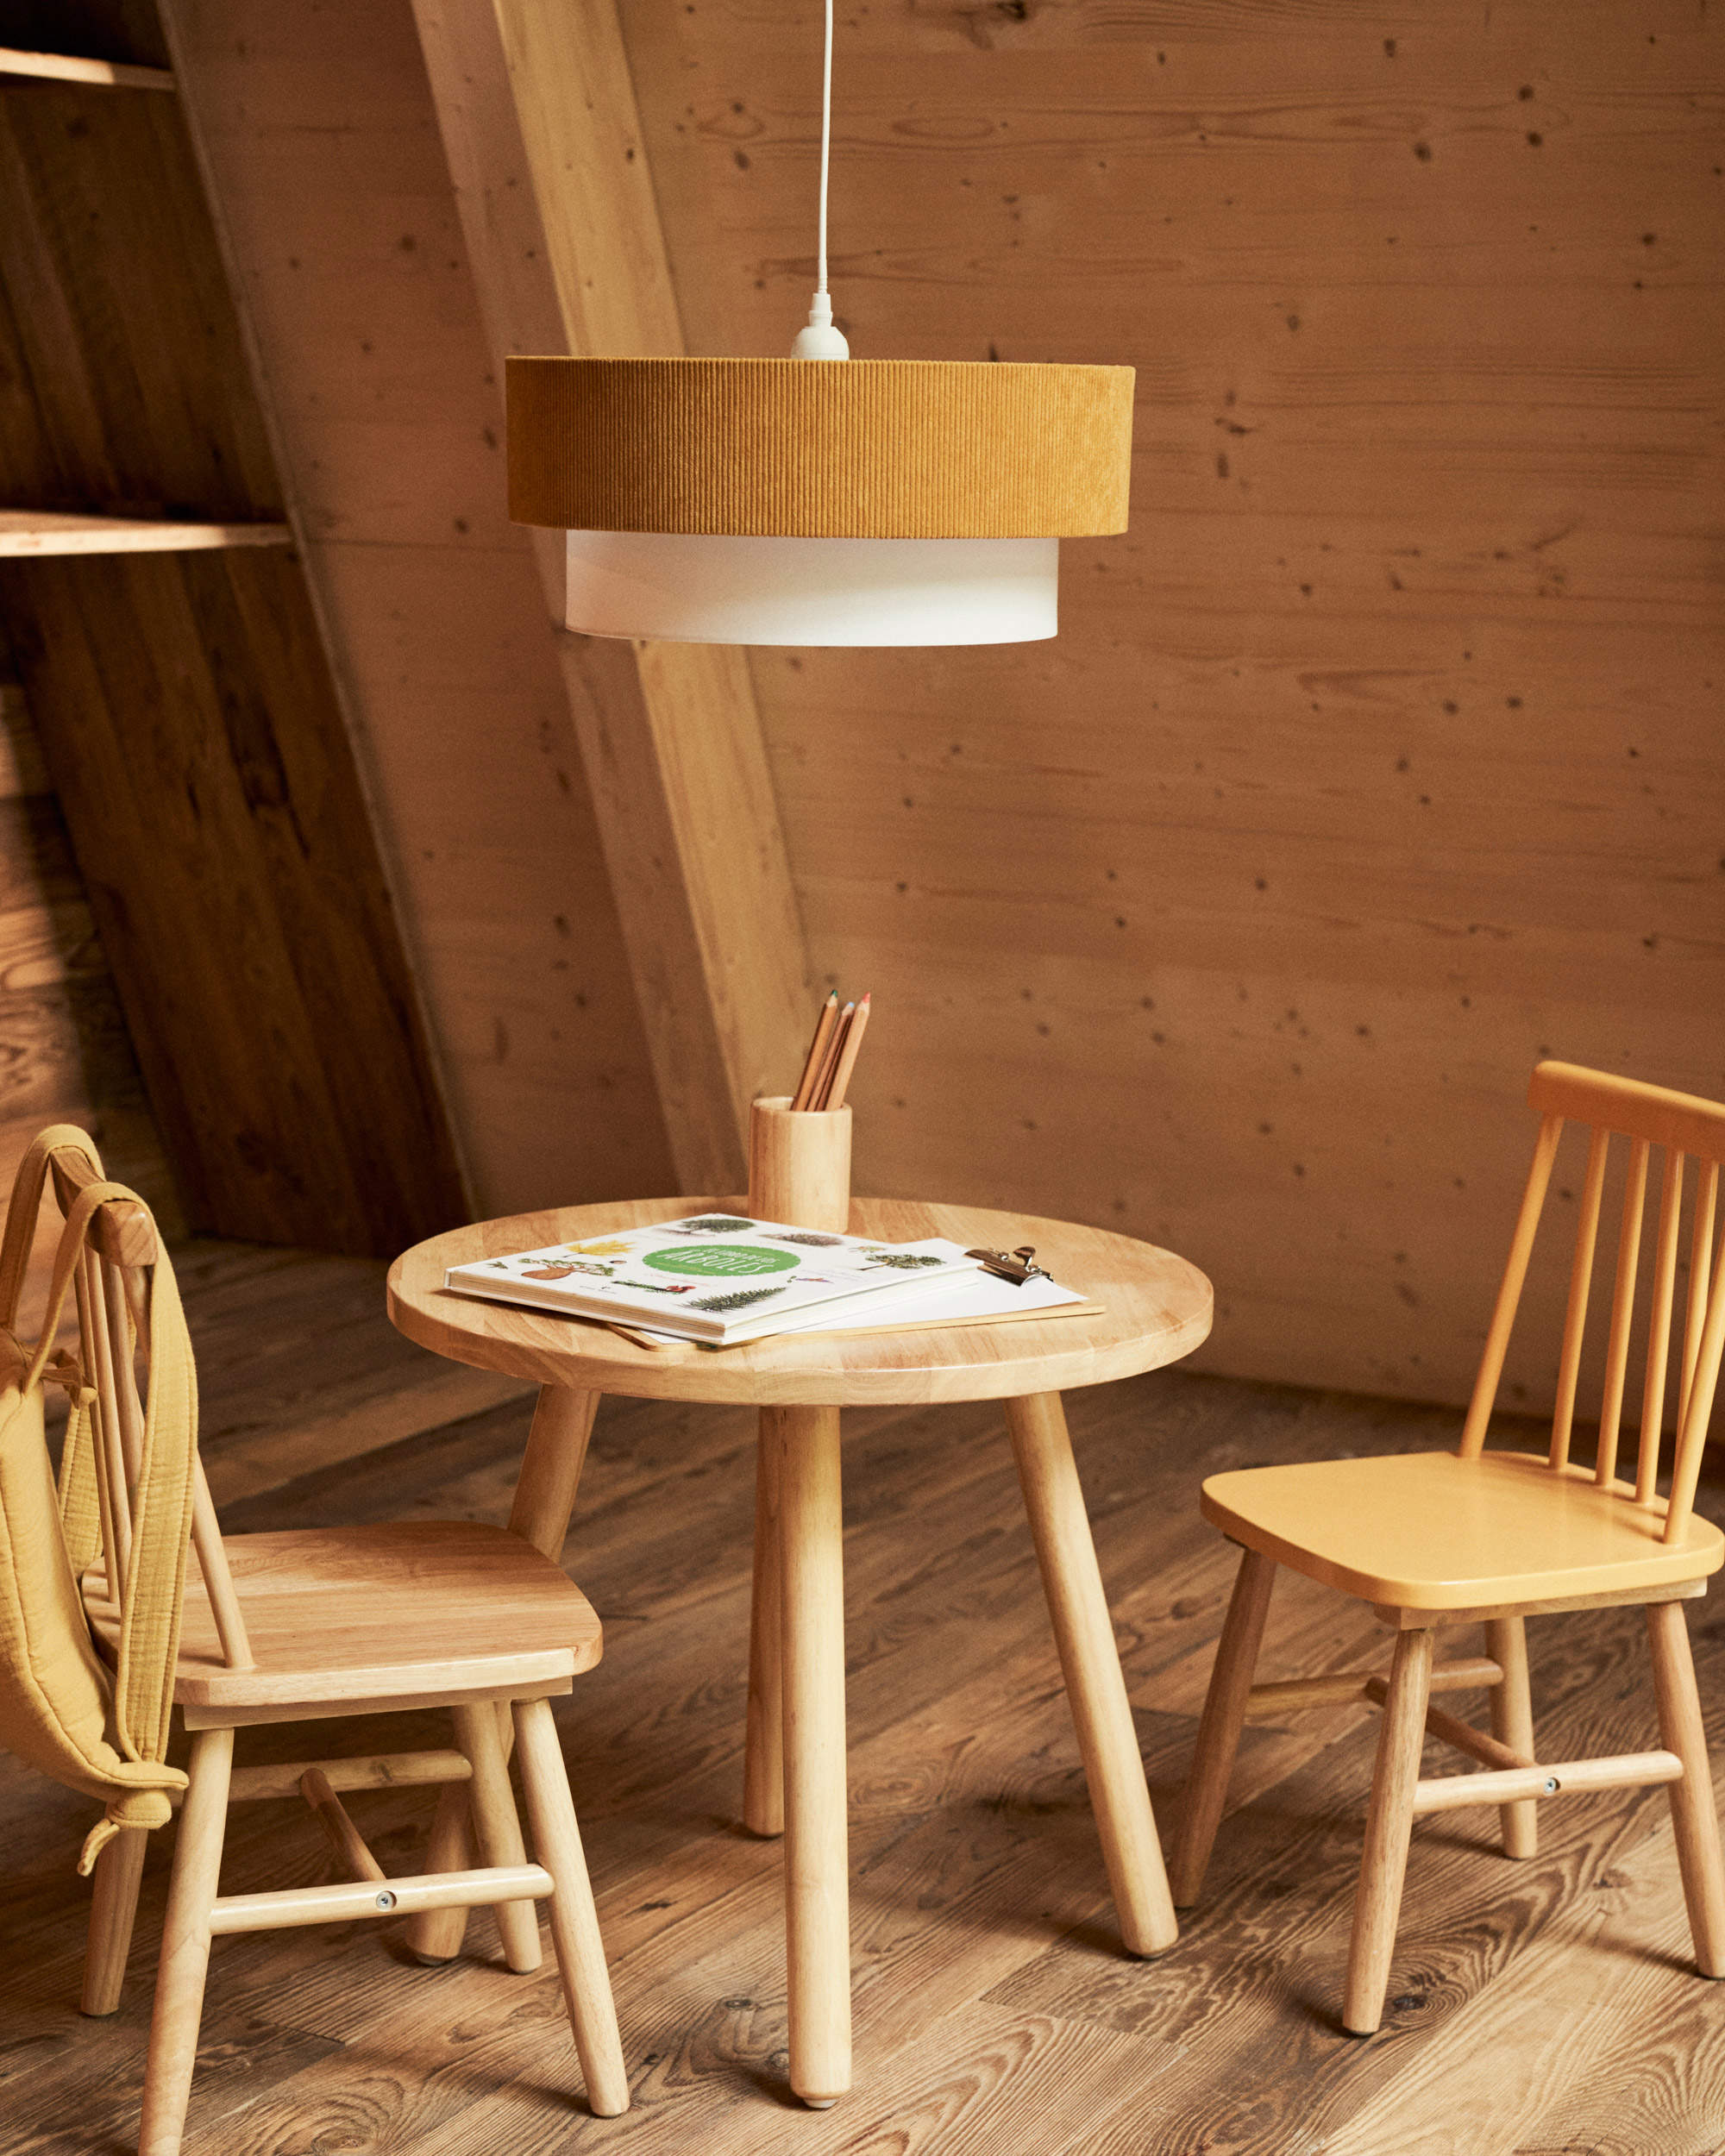 Zona de juegos infantil con mesa redonda y sillas de madera